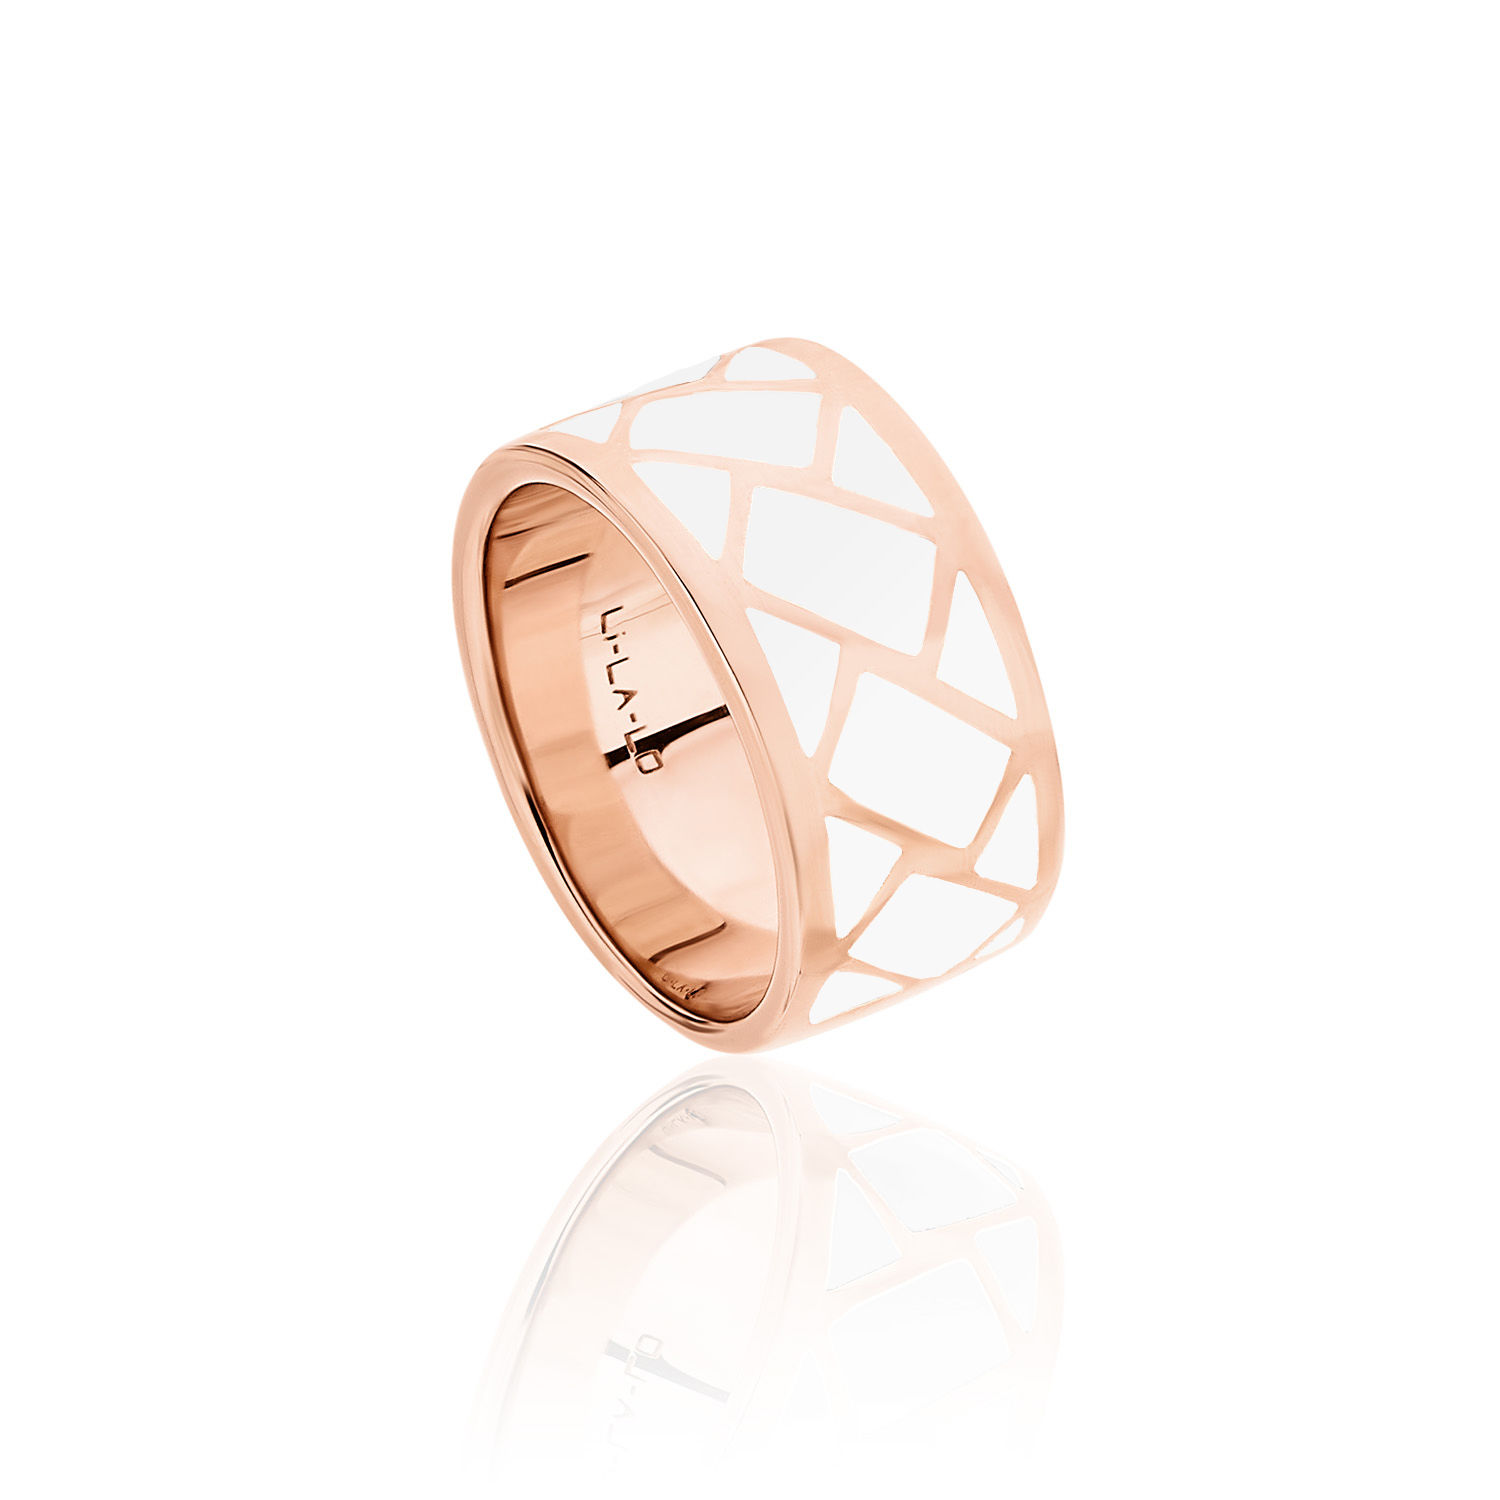 Δαχτυλίδι Lotus από ροζ επιχρυσωμένο ασήμι 925° και λευκό σμάλτο